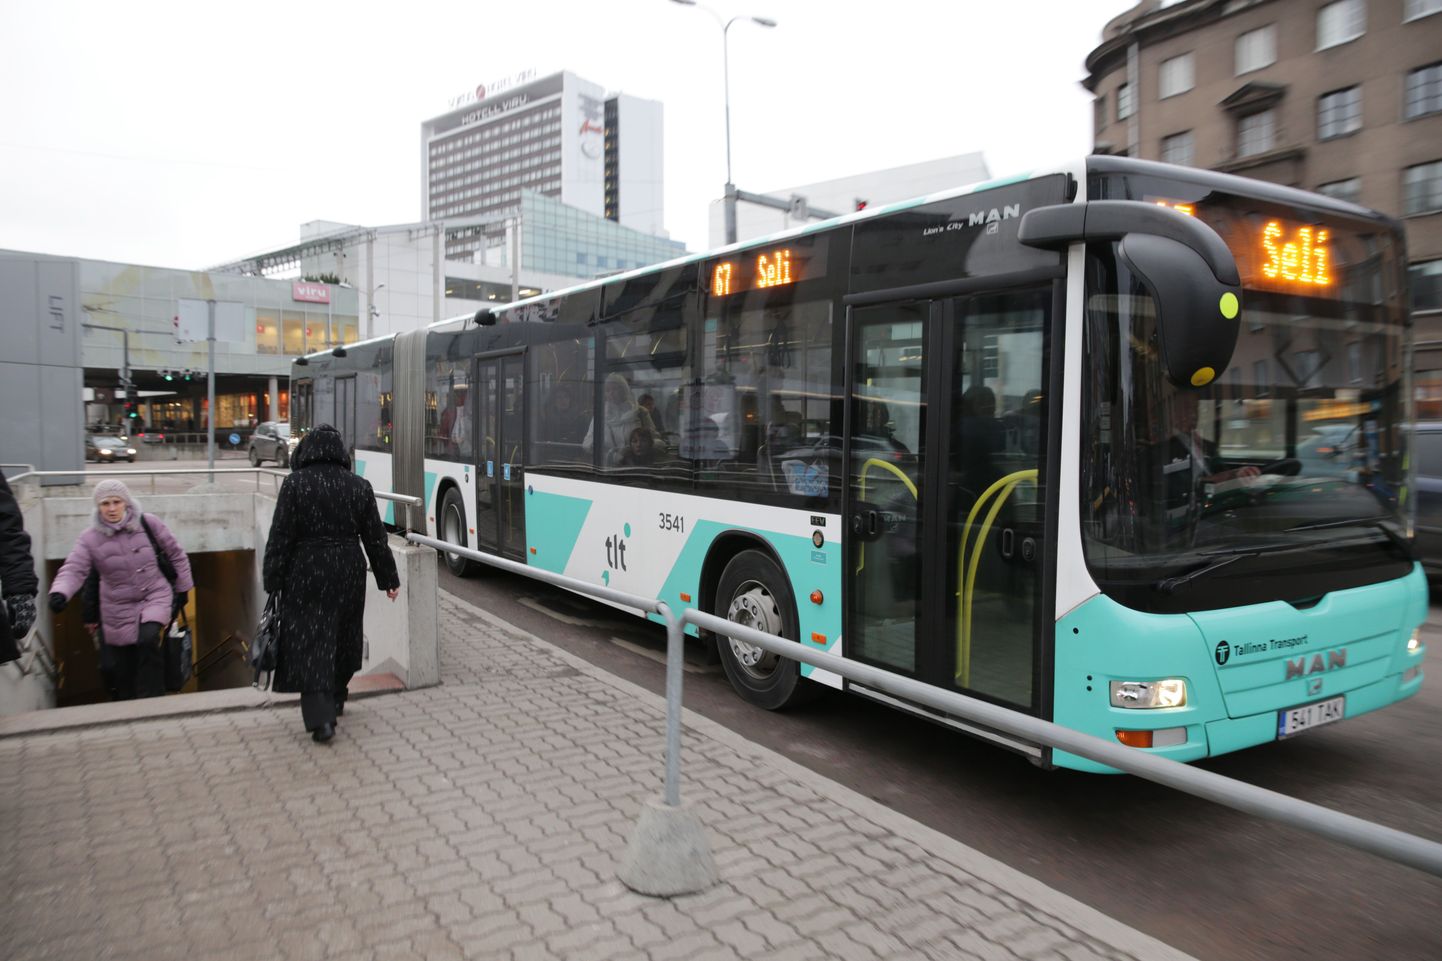 Tallinna bussiliinidel sõidavad ka praegu MANi bussid.